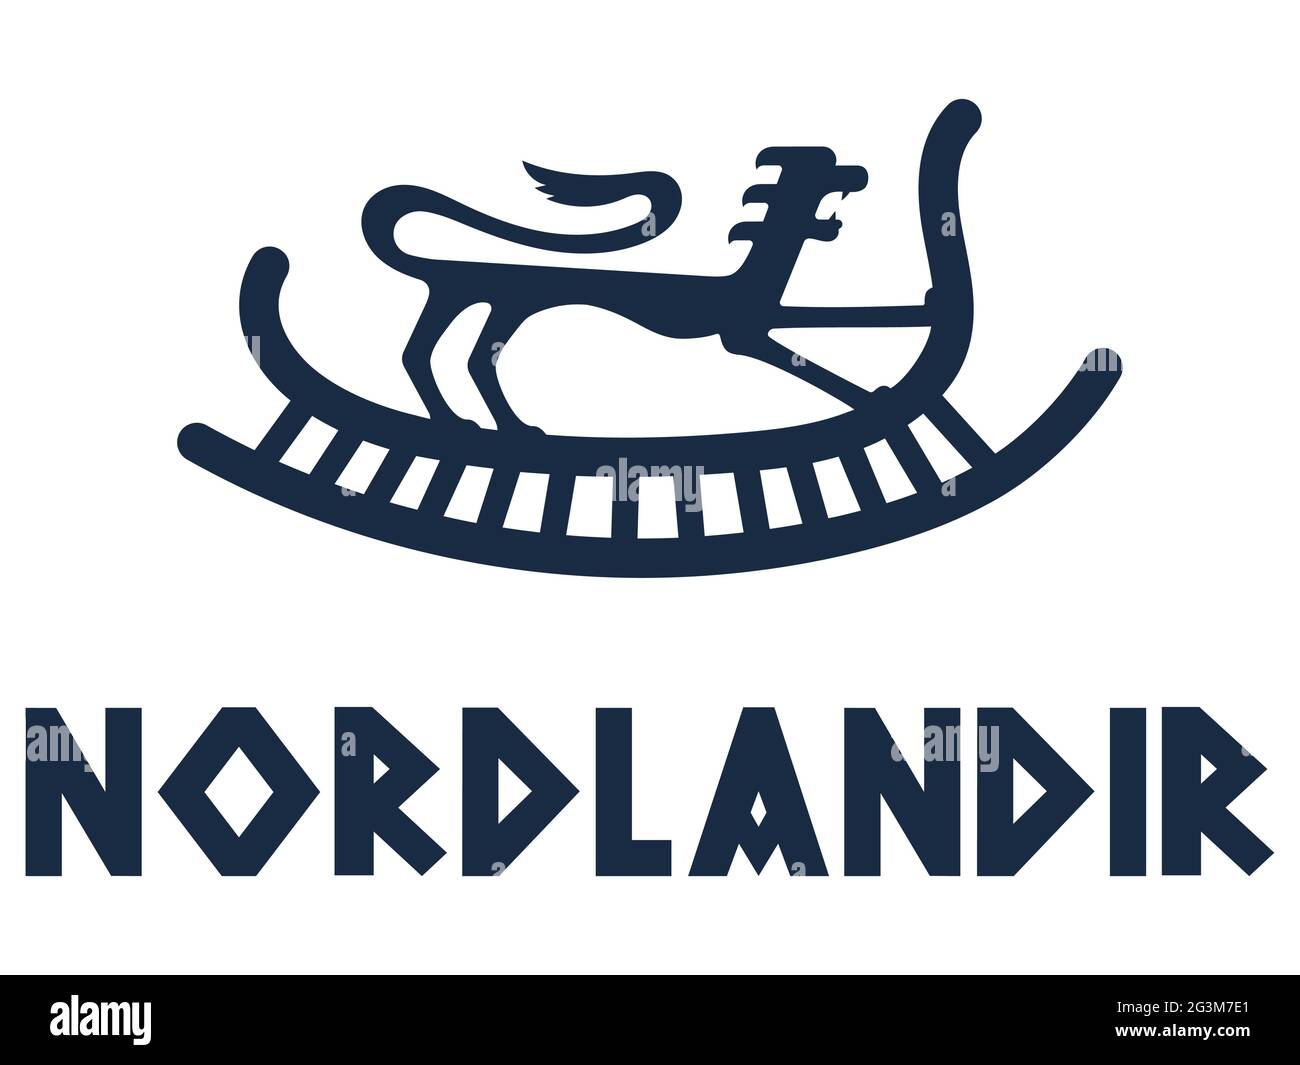 Viking, design scandinavo. Immagine di una nave vichinga e di un leone in antico stile retrò e iscrizione - Northerner in Norse Illustrazione Vettoriale